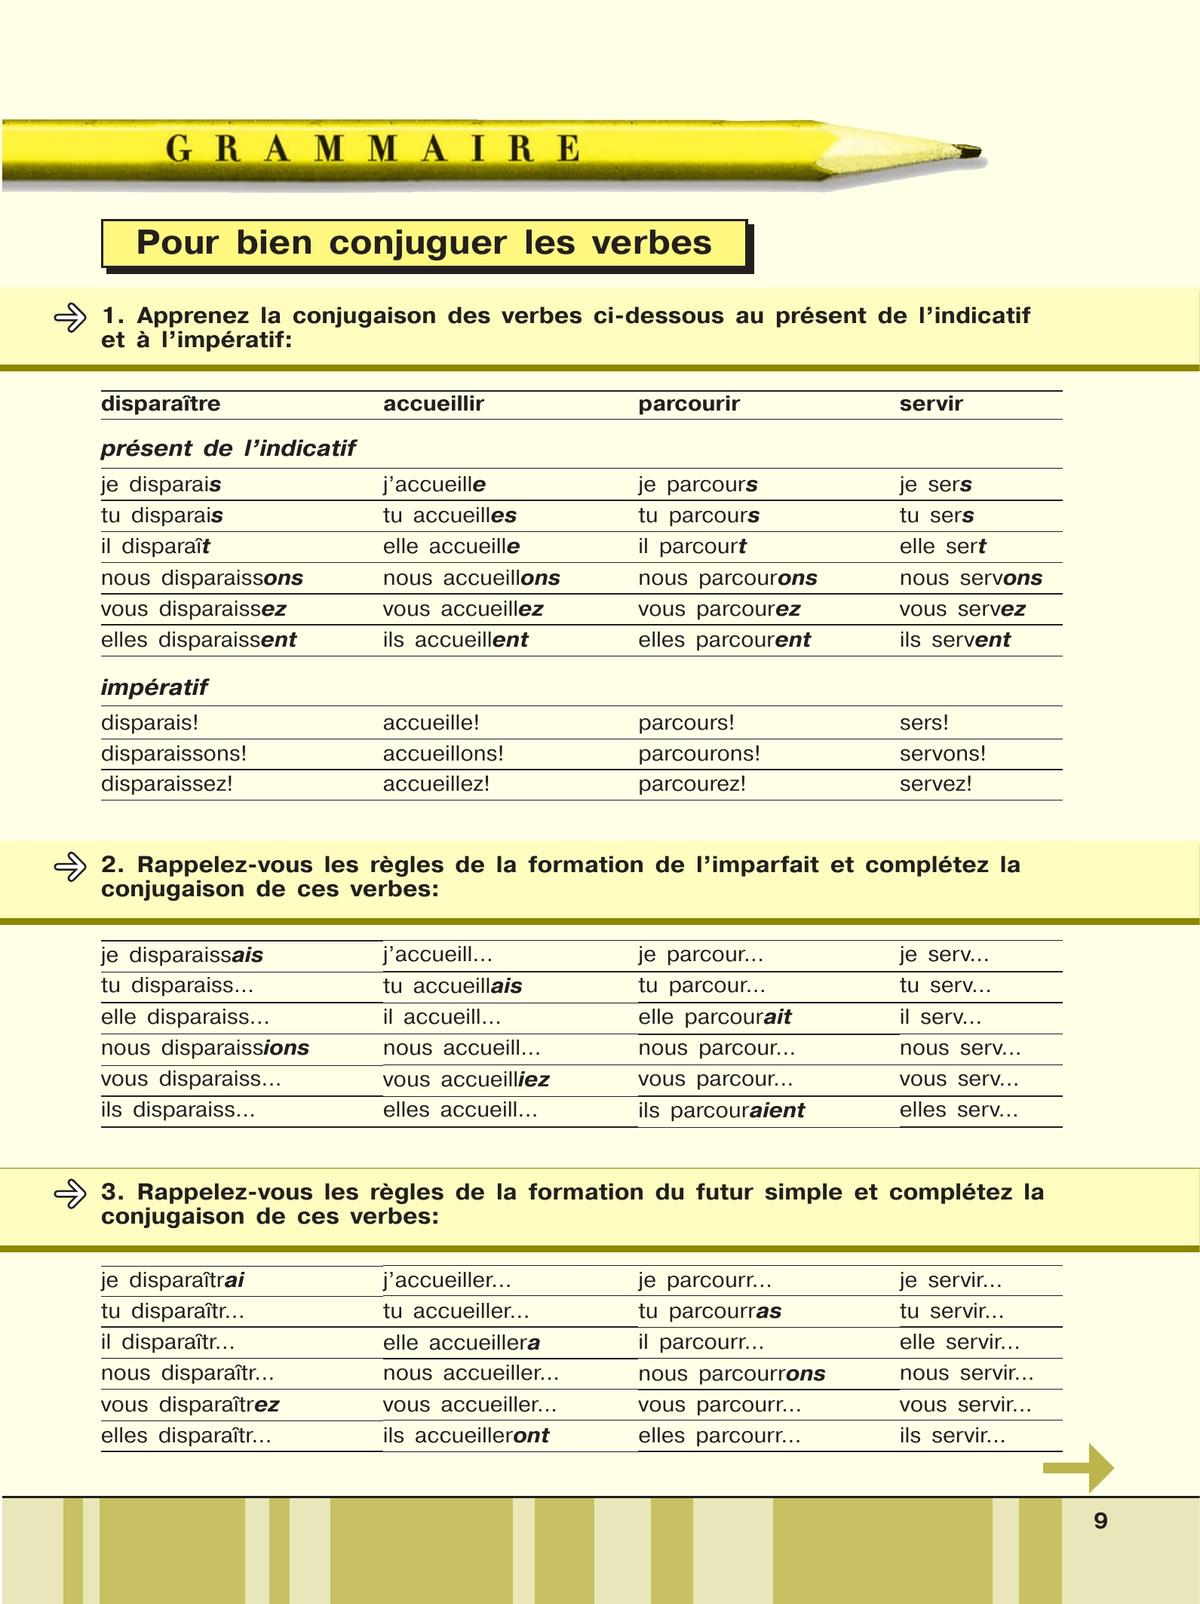 Французский язык. Второй иностранный язык. Сборник упражнений. 9 класс 8